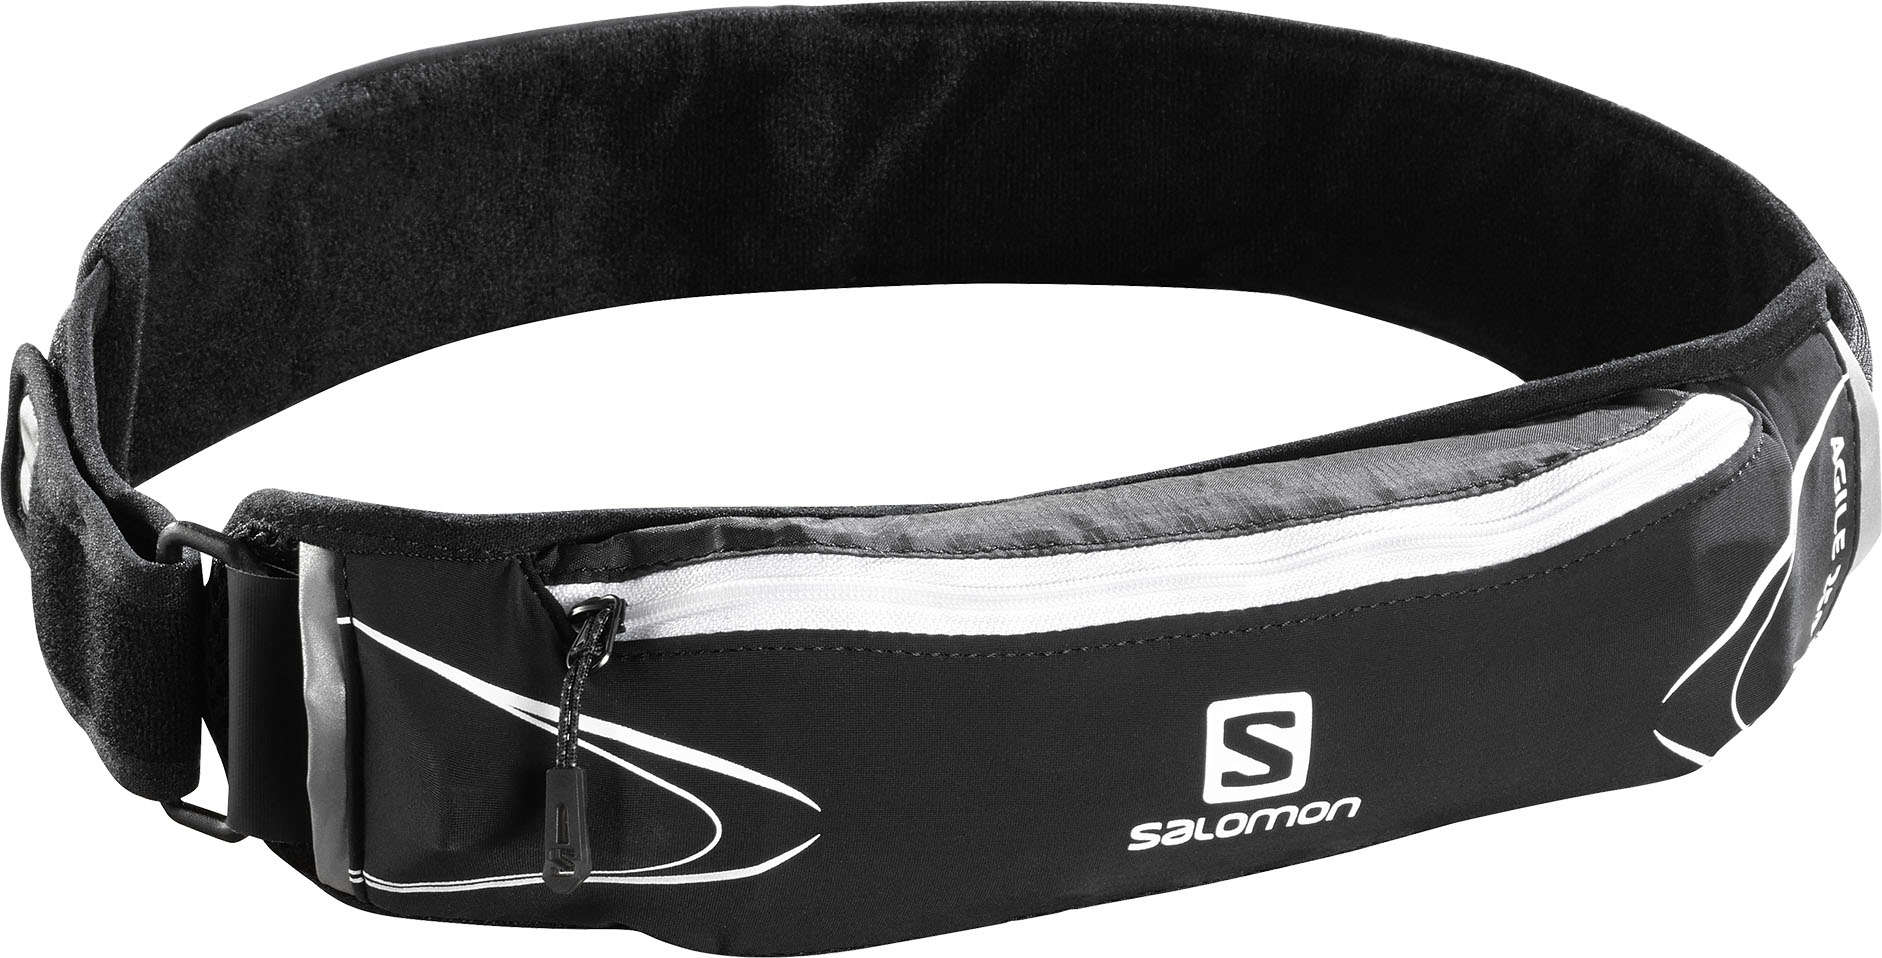 Salomon Agile 250 Belt Zwart/Wit